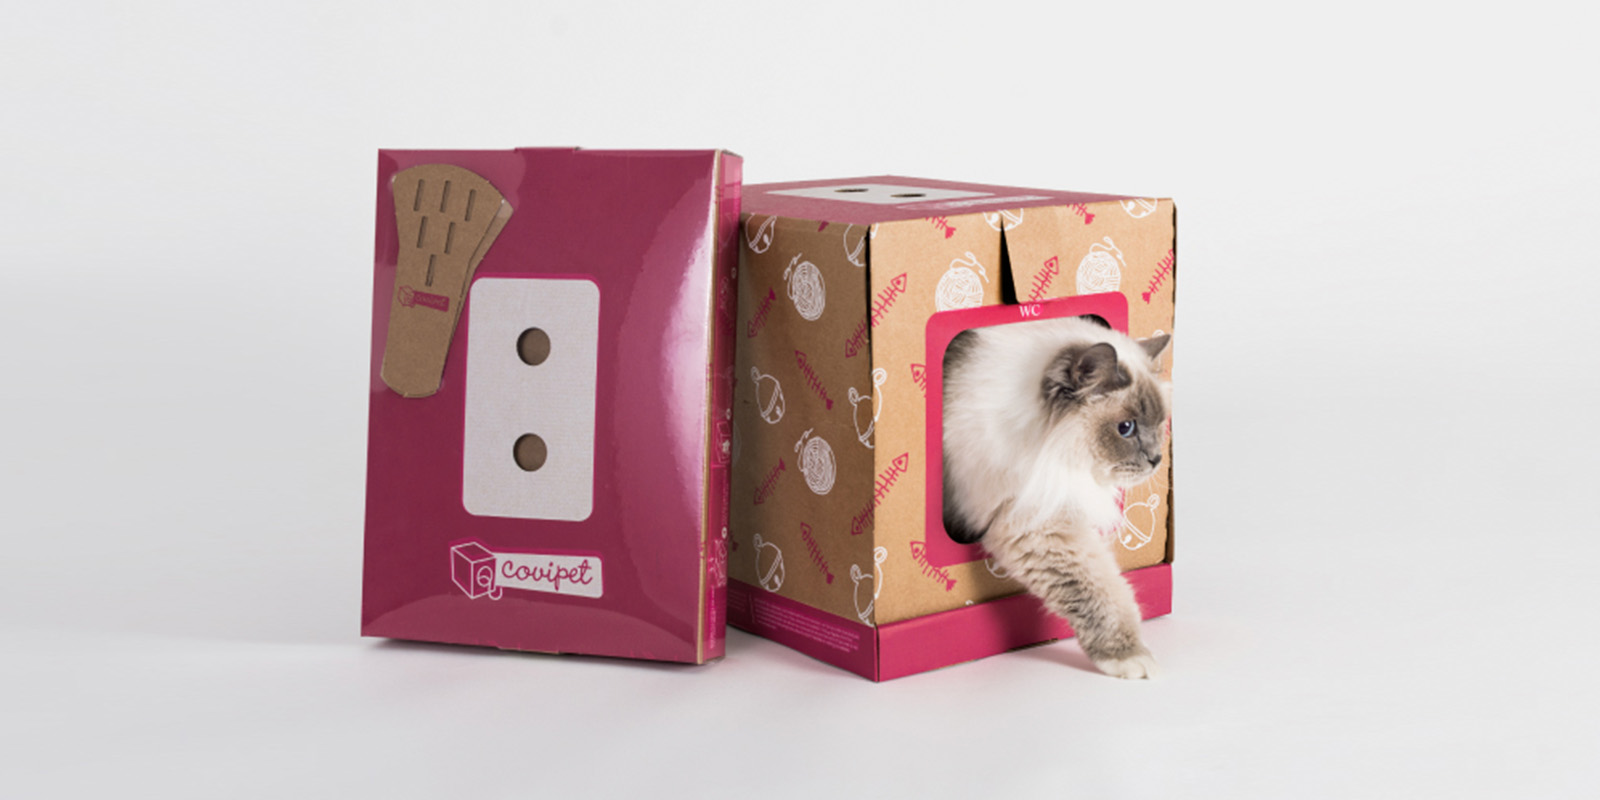 Caja con una ventana, un gato asomando la cabeza y la pata delantera izquierda. Versión compacta de la misma caja color magenta con el logo de Covipet.